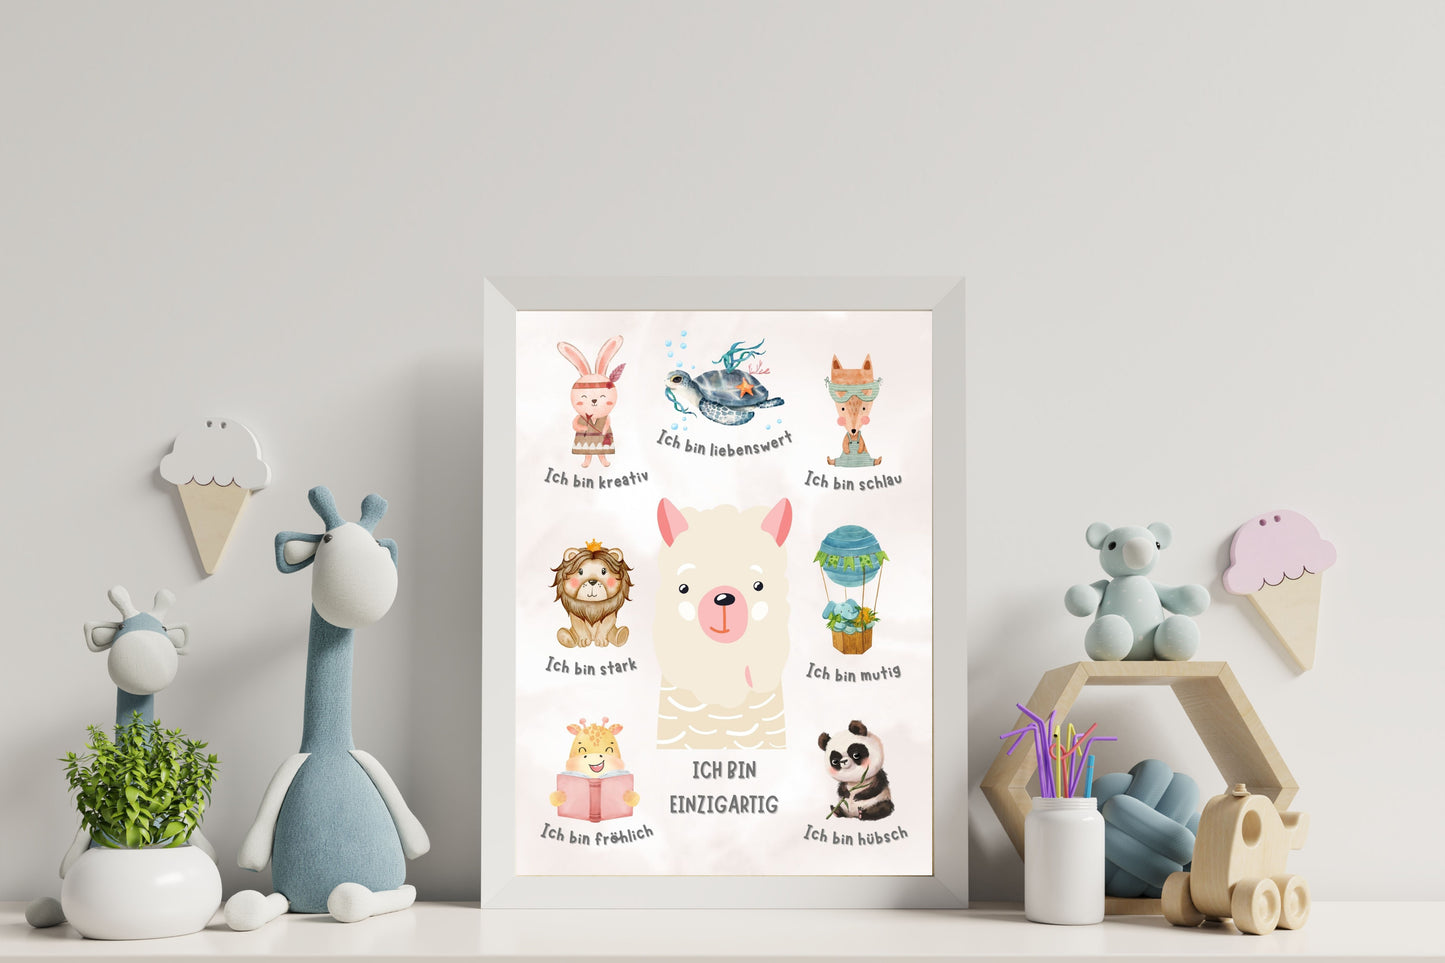 Affirmationsposter A4 - Tier Poster mit Affirmationen für Kinder - Positive Glaubenssätze mit Spaß integrieren